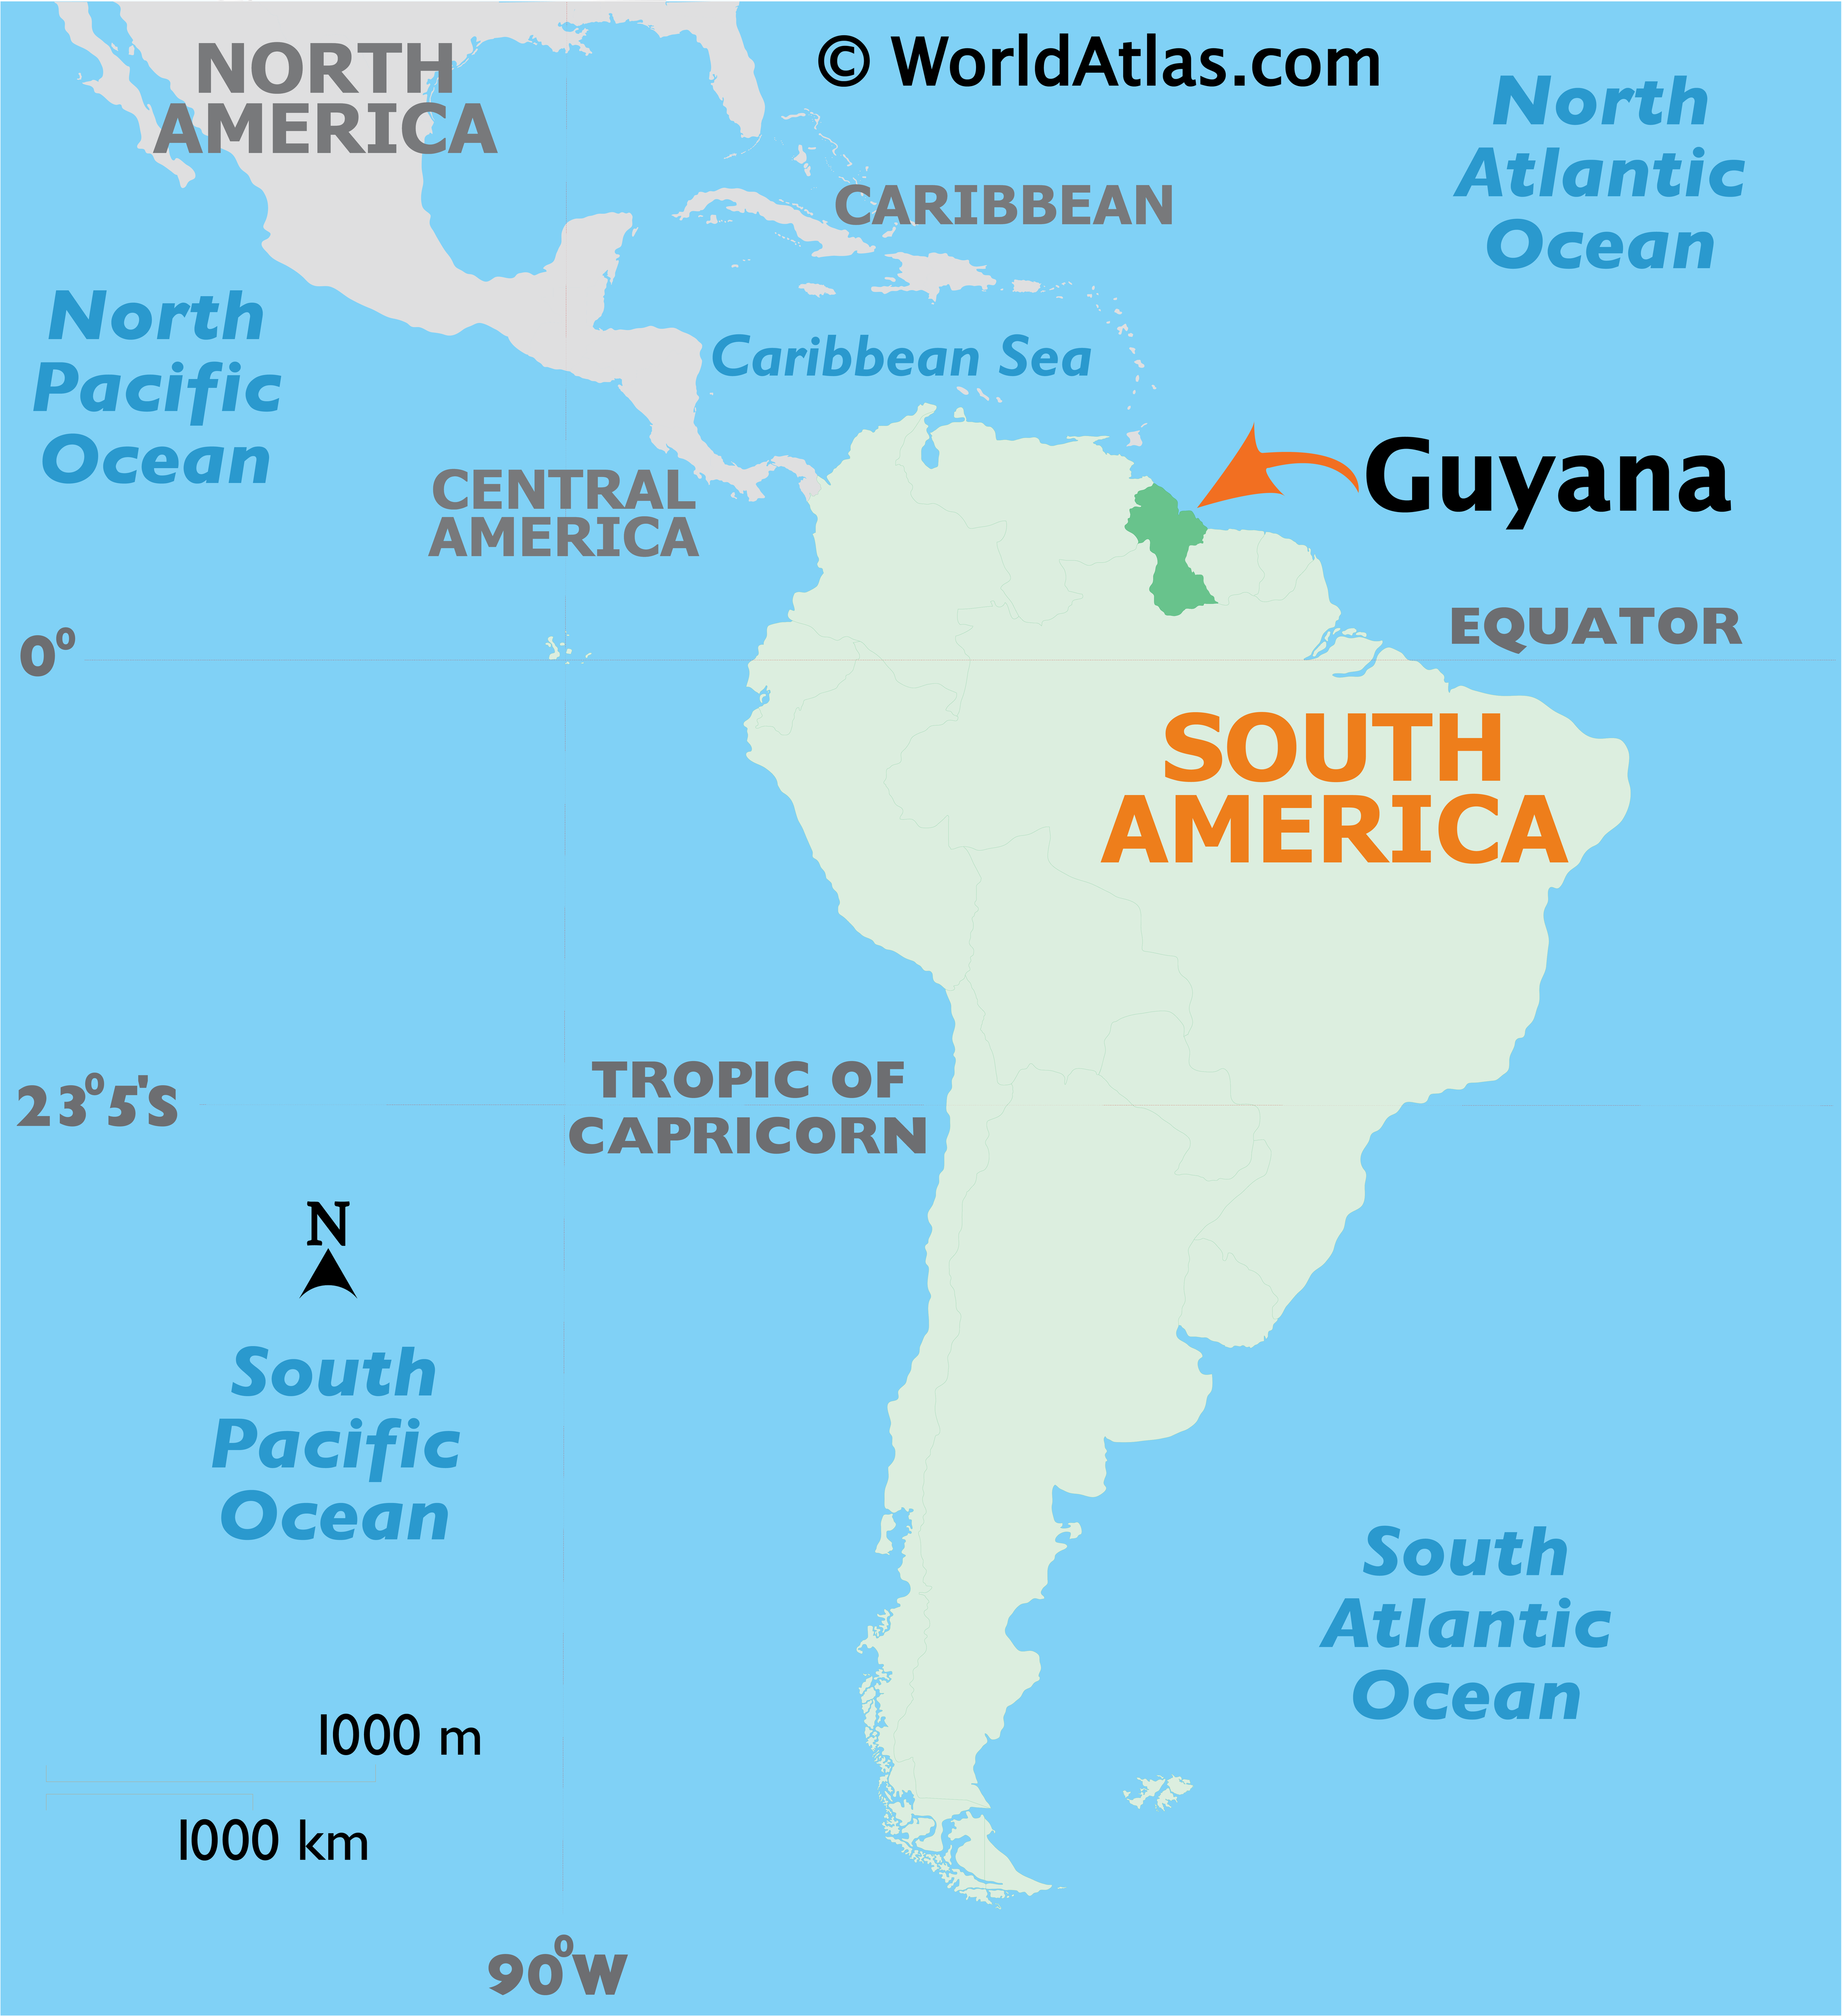 خريطة غويانا و زي ما إنت شايف جغرافياً هي ضمن قارة أميركا الجنوبية.